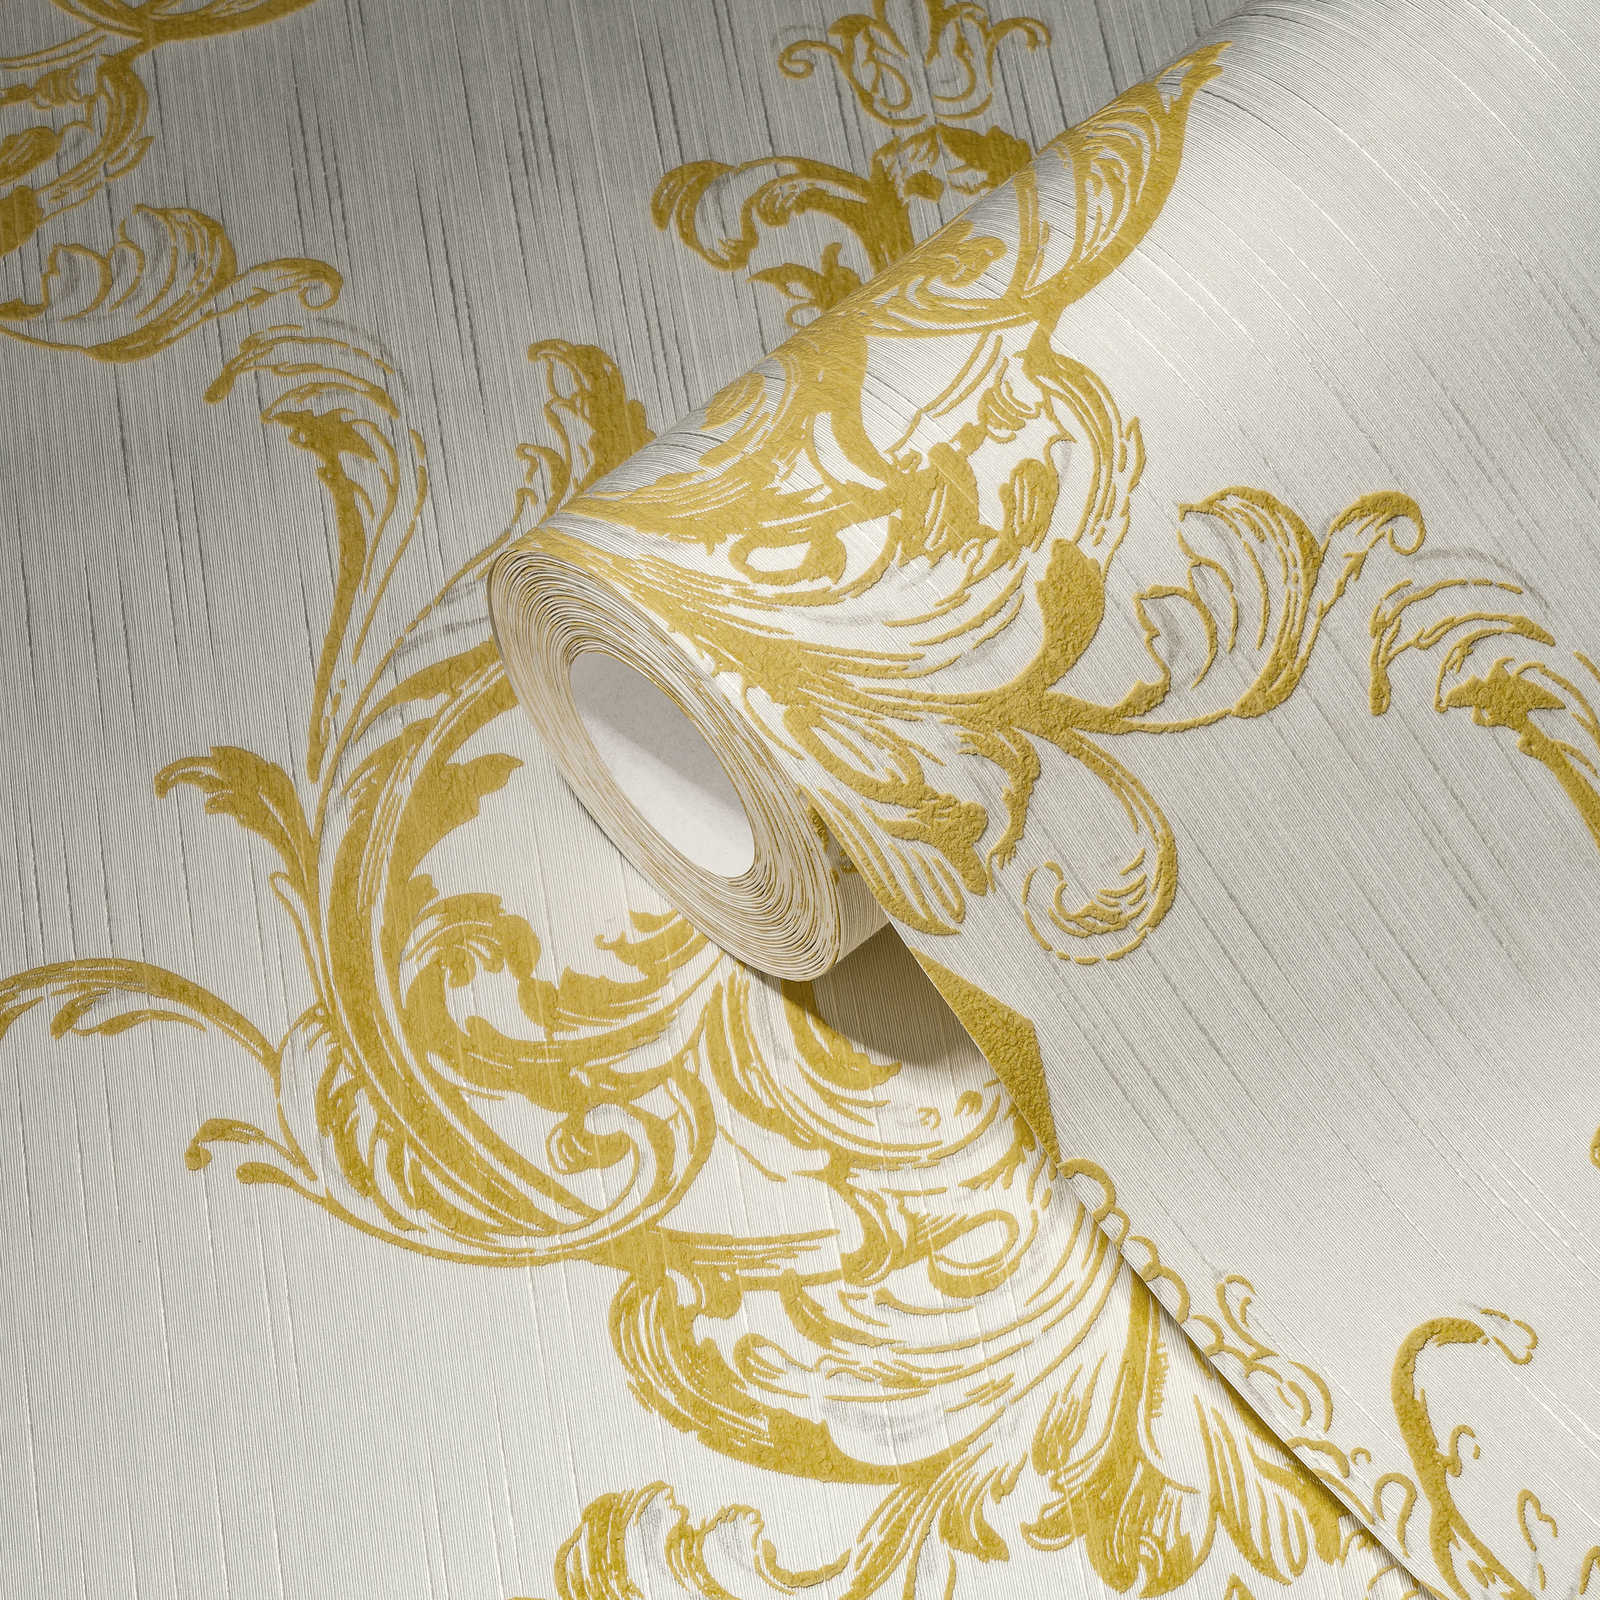             vliesbehang historisch ornament ontwerp met structuur effect - goud, wit
        